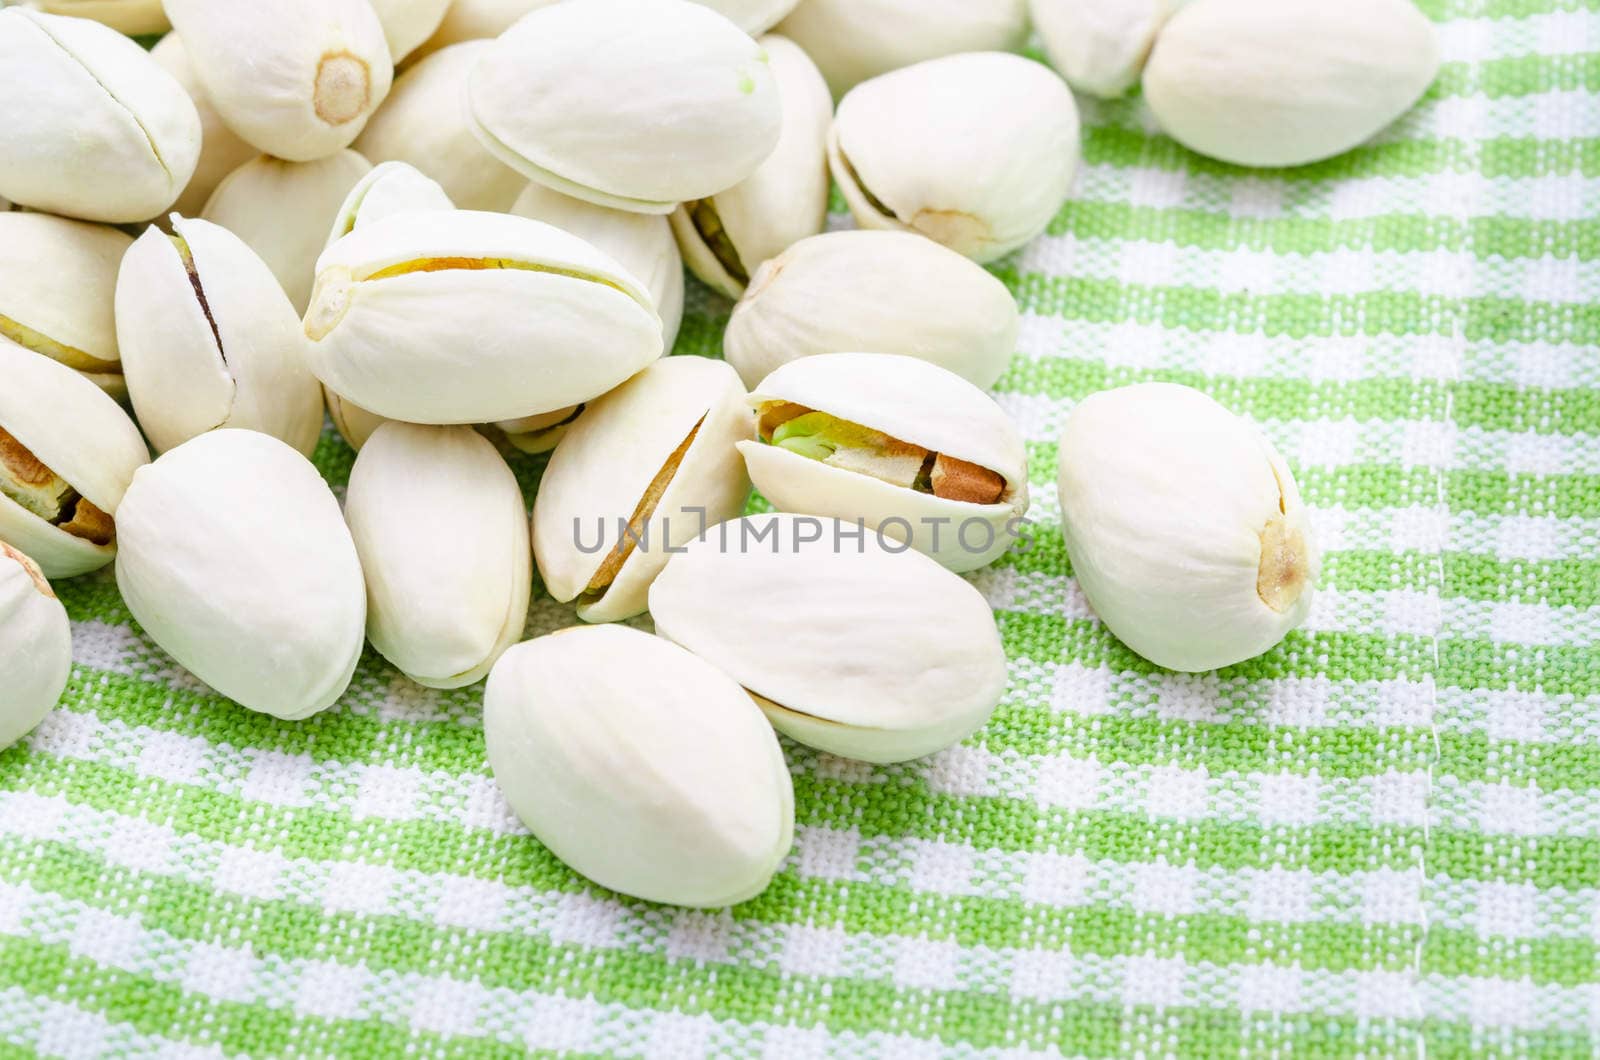 Pistachio nuts. by Gamjai